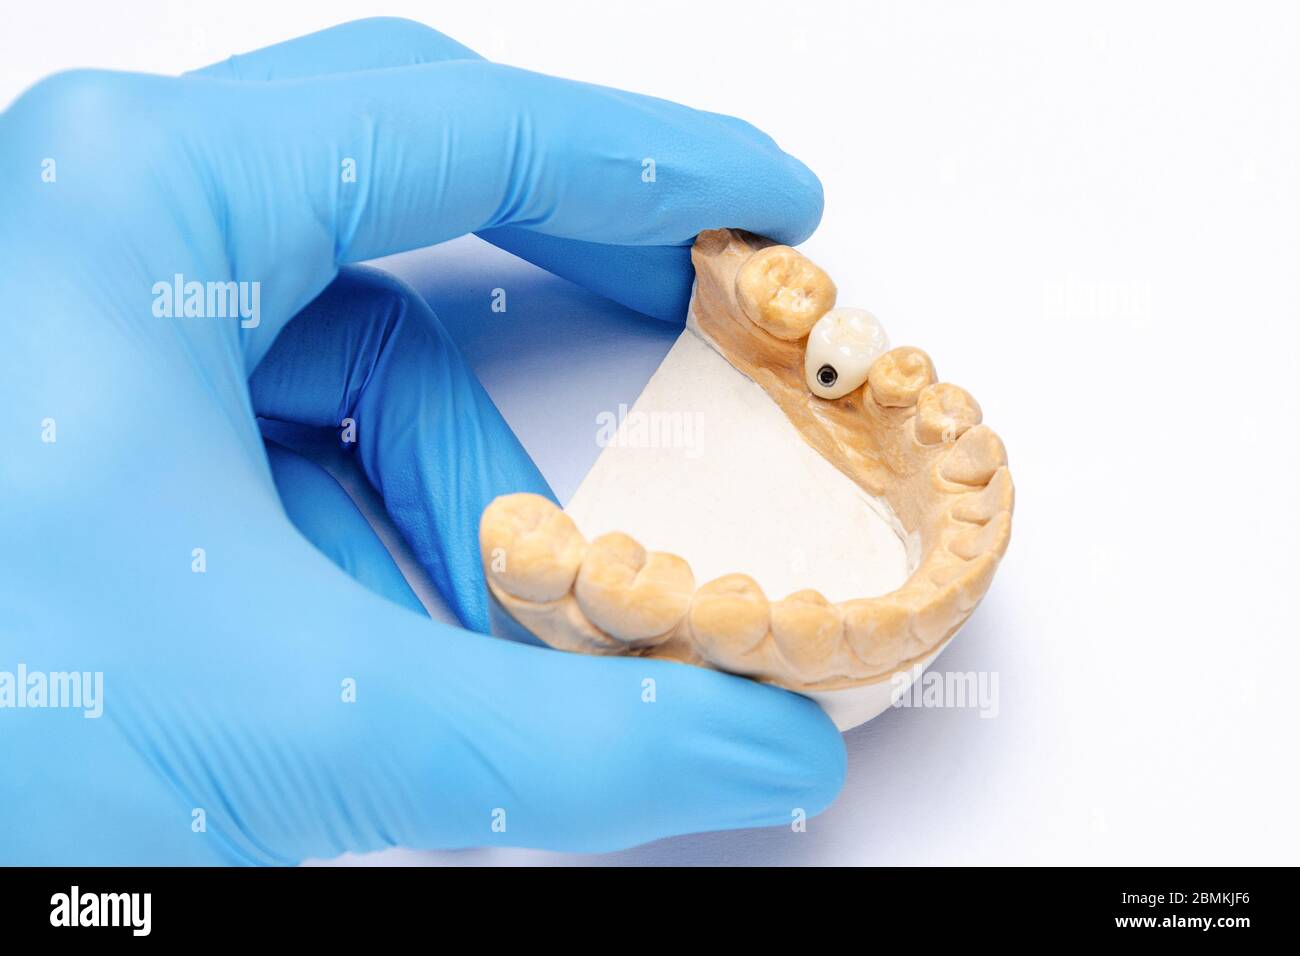 Eine Hand hält ein Gipsmodell des Unterkiefers mit einer Keramikkrone auf einem Zahnimplantat. Konzept der Prothetik auf Zahnimplantaten. Zahnimplantate Stockfoto